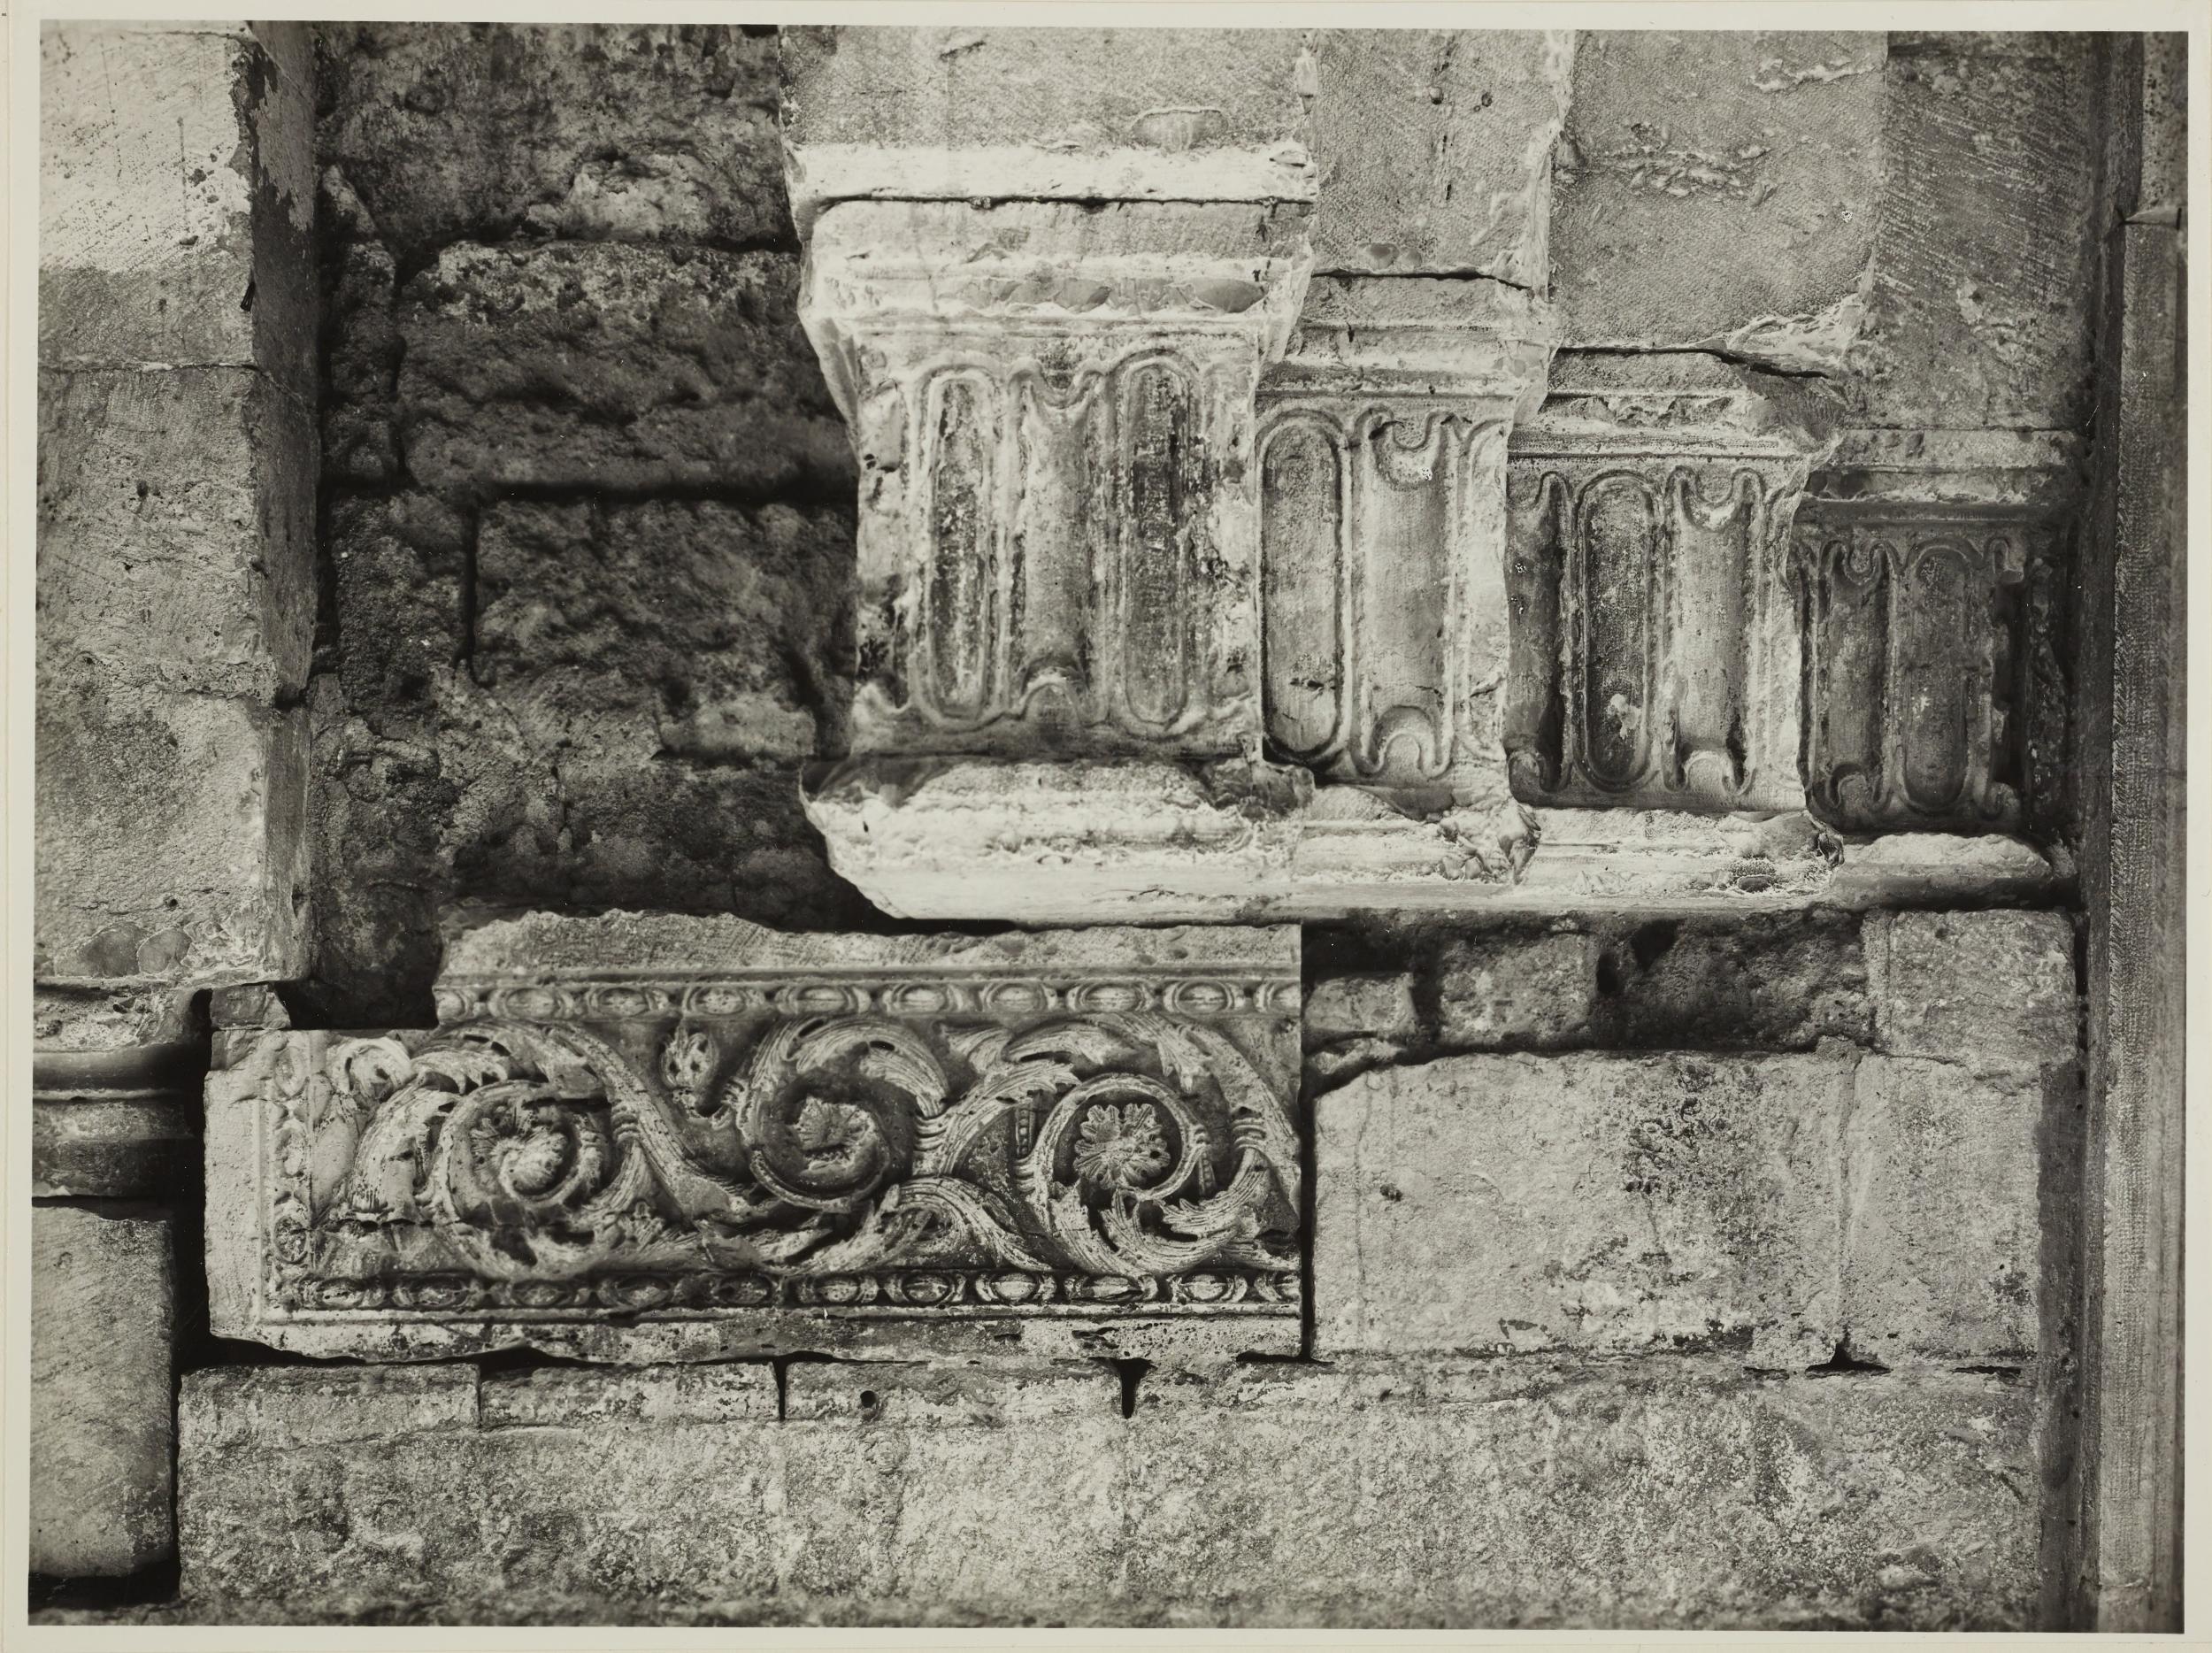 Fotografo non identificato, Barletta - Chiesa SS. Sepolcro, facciata, frammenti del portale originale, 1956–1957, gelatina ai sali d'argento/carta, MPI6023039